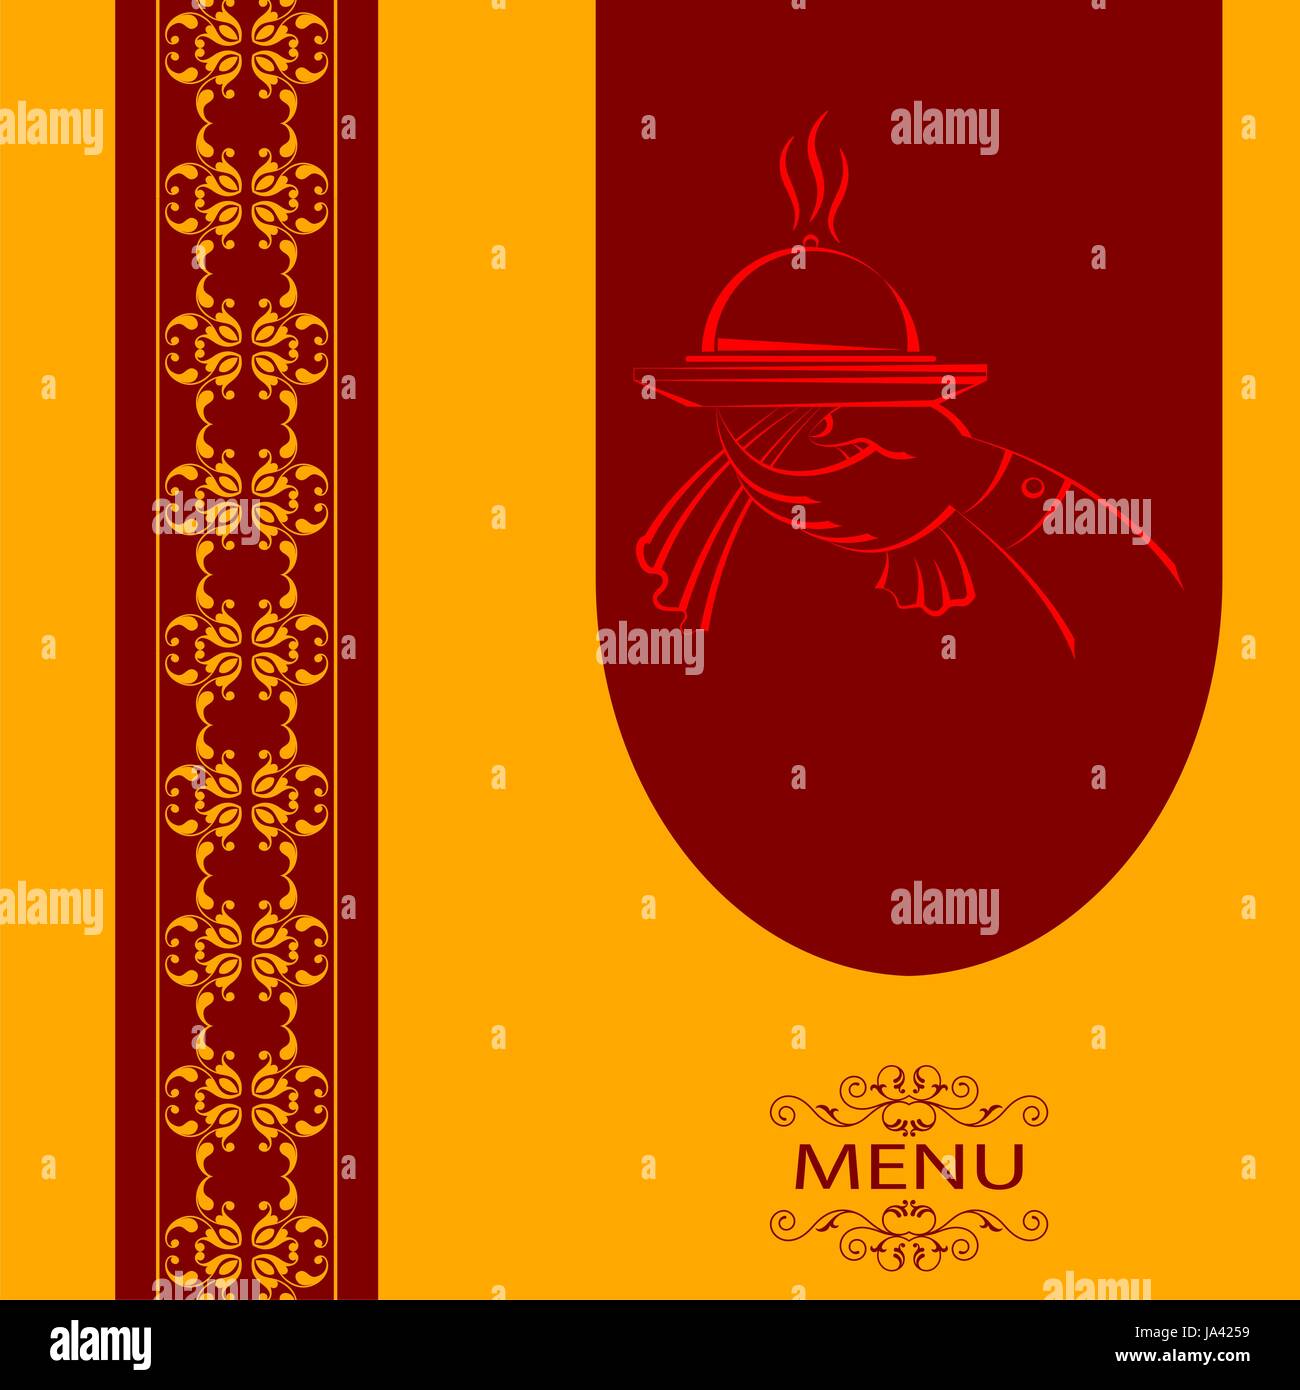 Thiết kế thẻ menu: Với những mẫu thiết kế độc đáo và tinh tế, chúng tôi sẽ giúp bạn tạo ra bảng thực đơn tuyệt vời cho quán ăn của mình. Những thiết kế thẻ menu của chúng tôi sẽ tạo nên một phong cách khác biệt và giúp thực khách có một trải nghiệm ẩm thực thật đặc biệt.